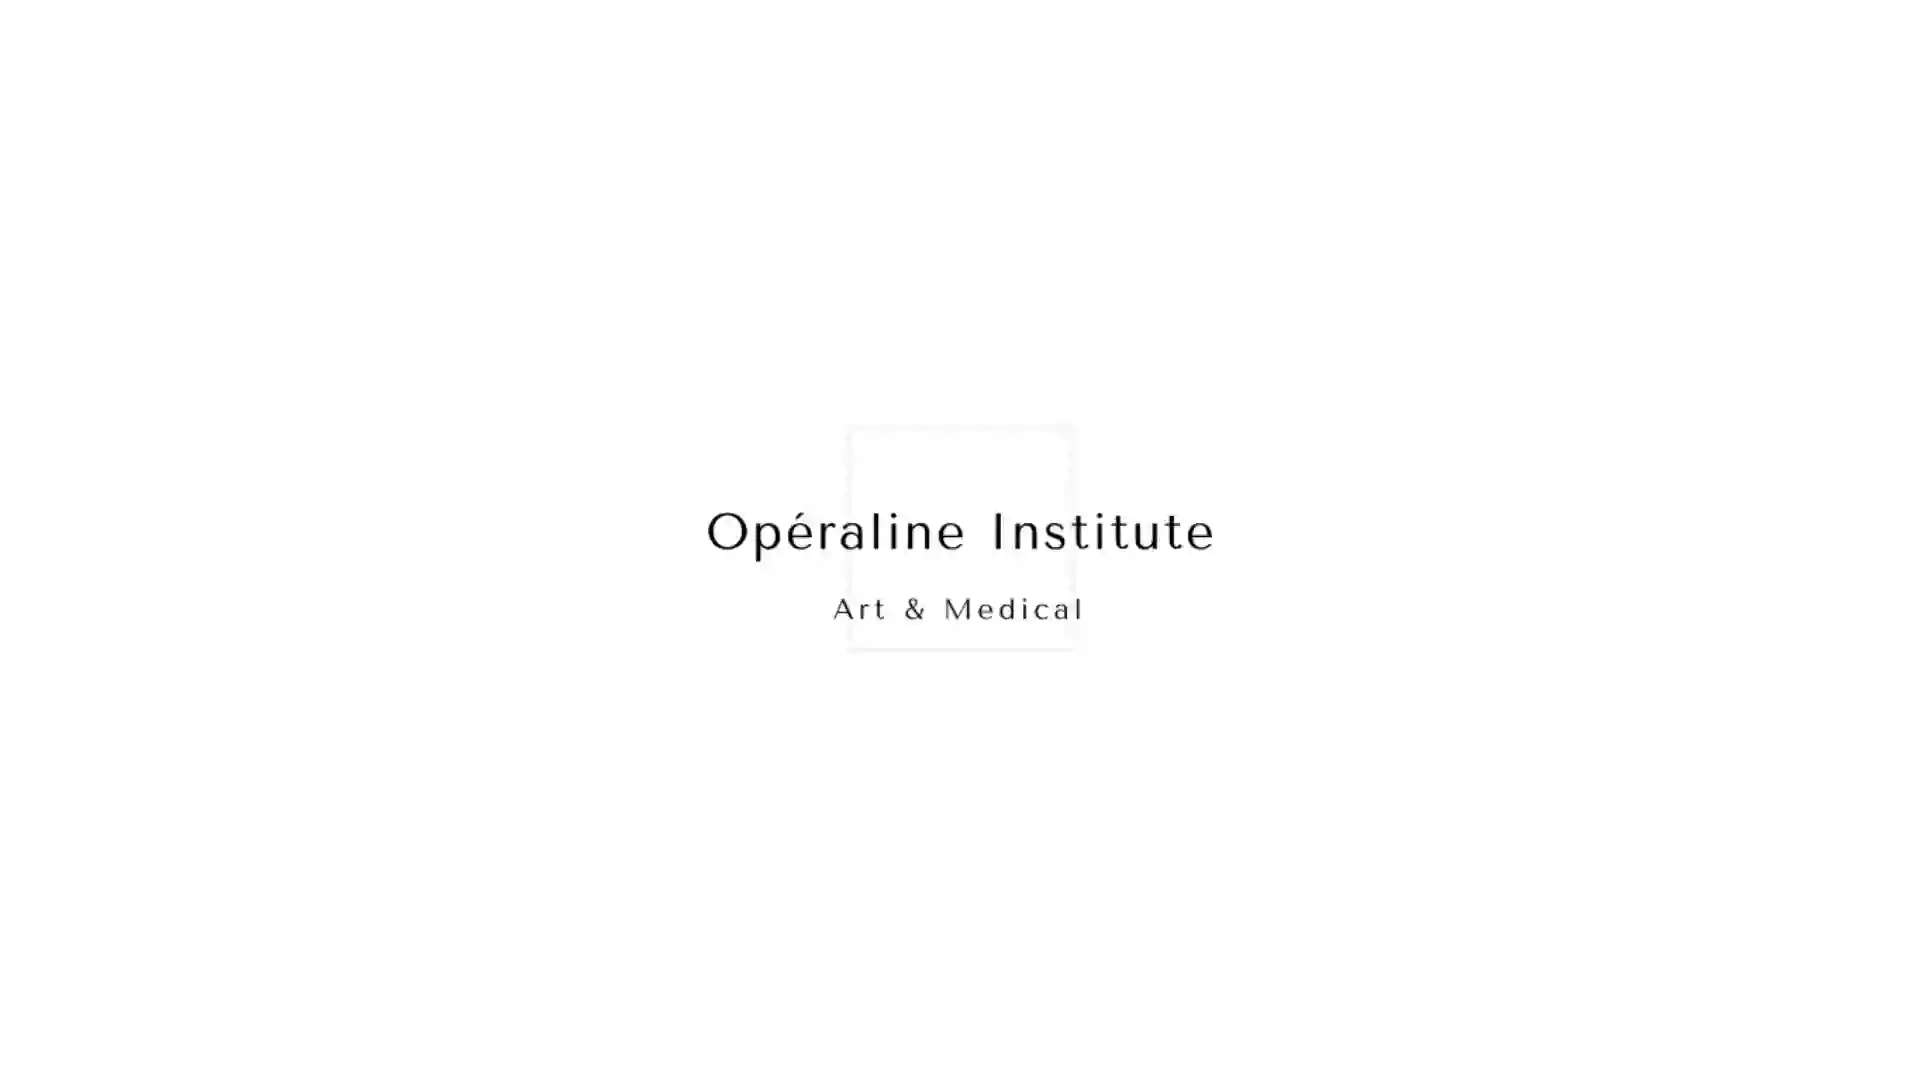 OperaLine Institute